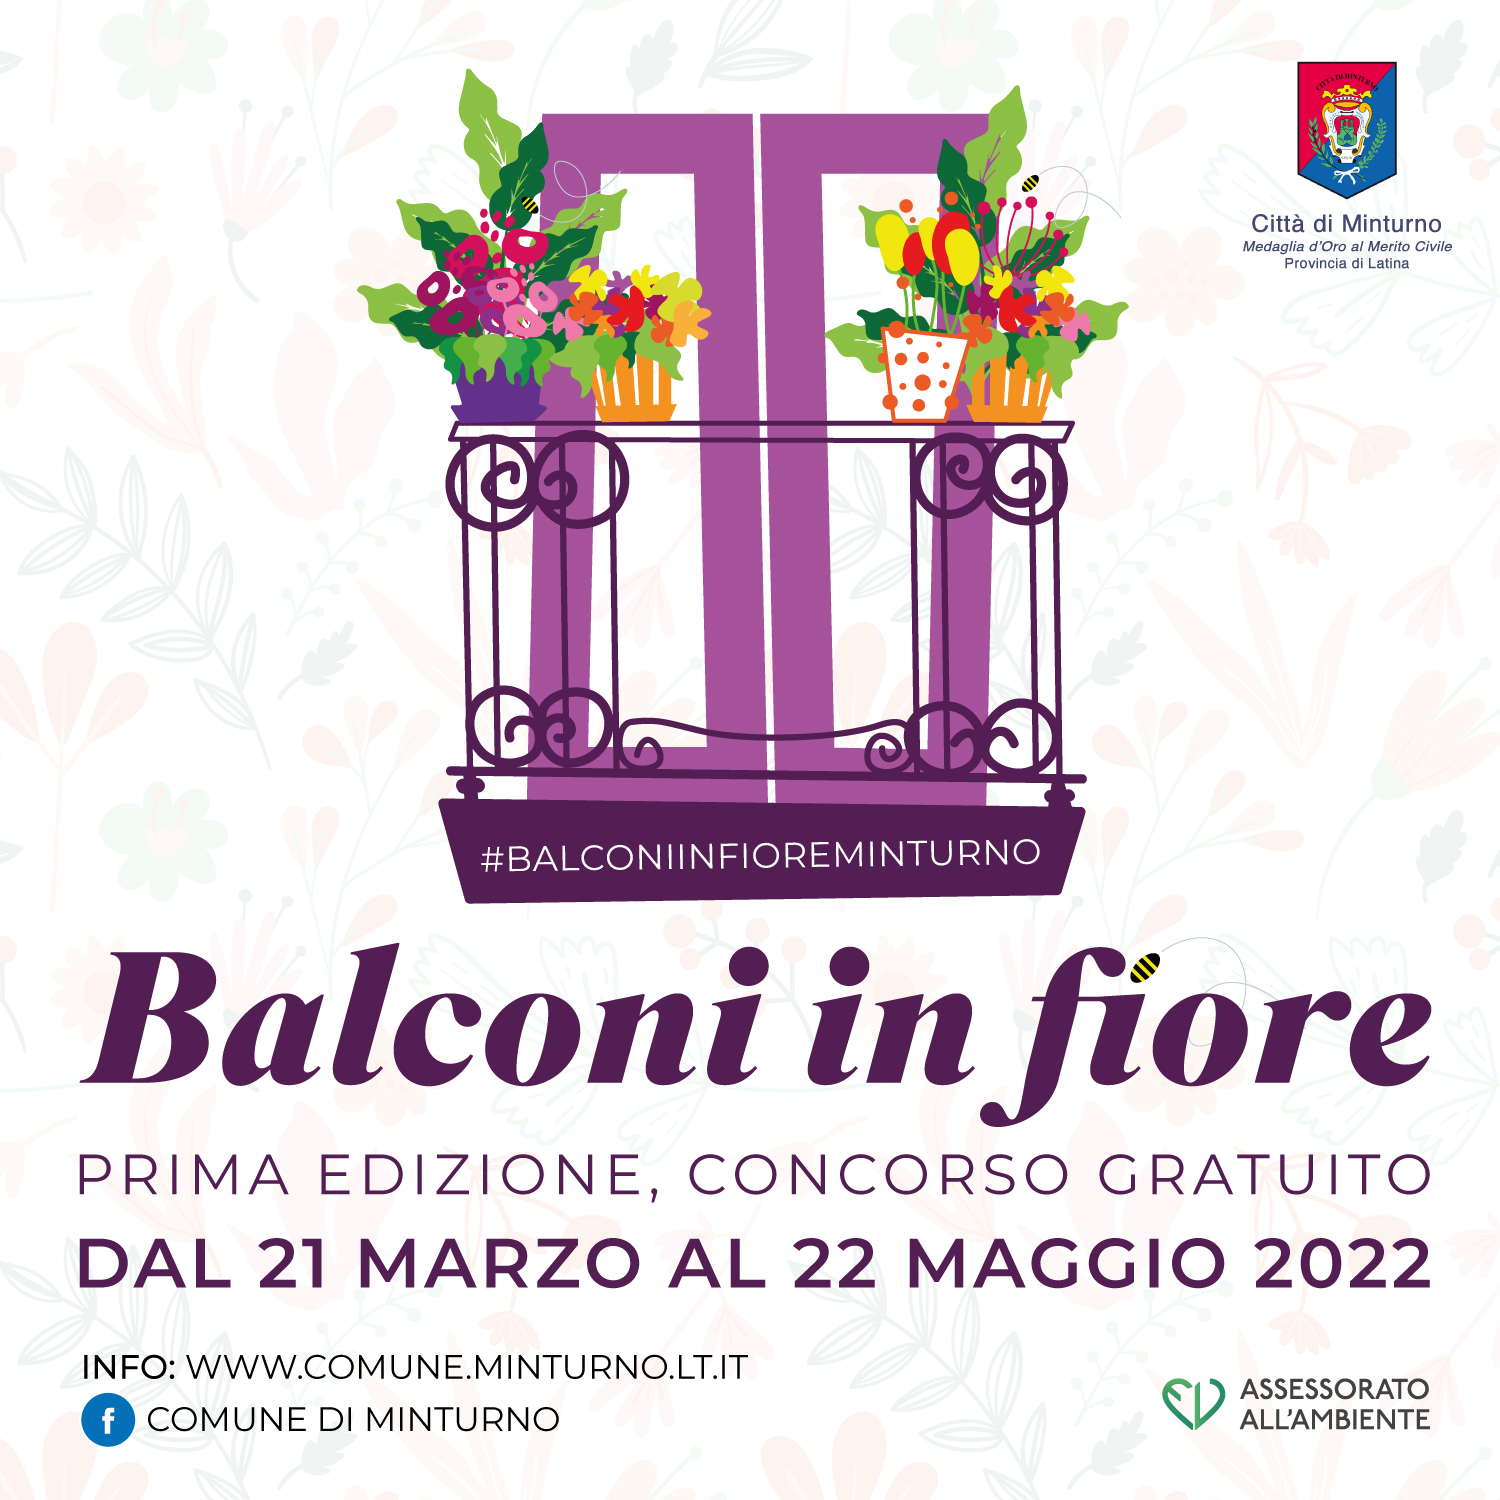 “Balconi in fiore” - Un concorso comunale a Minturno per sensibilizzare la cittadinanza al decoro urbano e alla tutela del verde